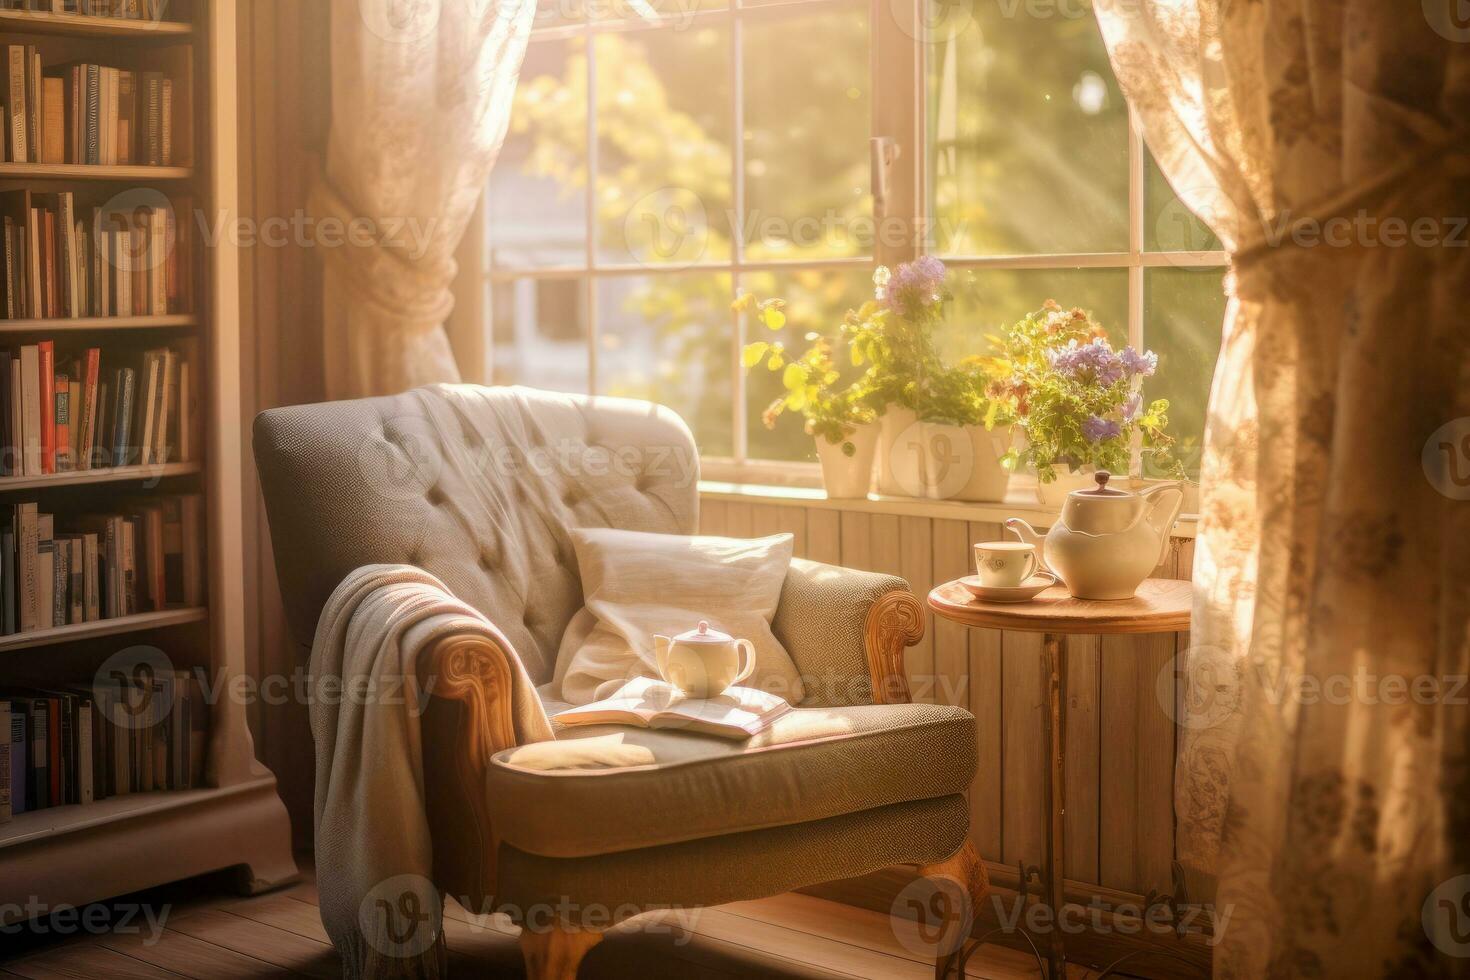 een ontspannende in een comfortabel fauteuil door een venster, met zacht zonlicht streaming in. foto